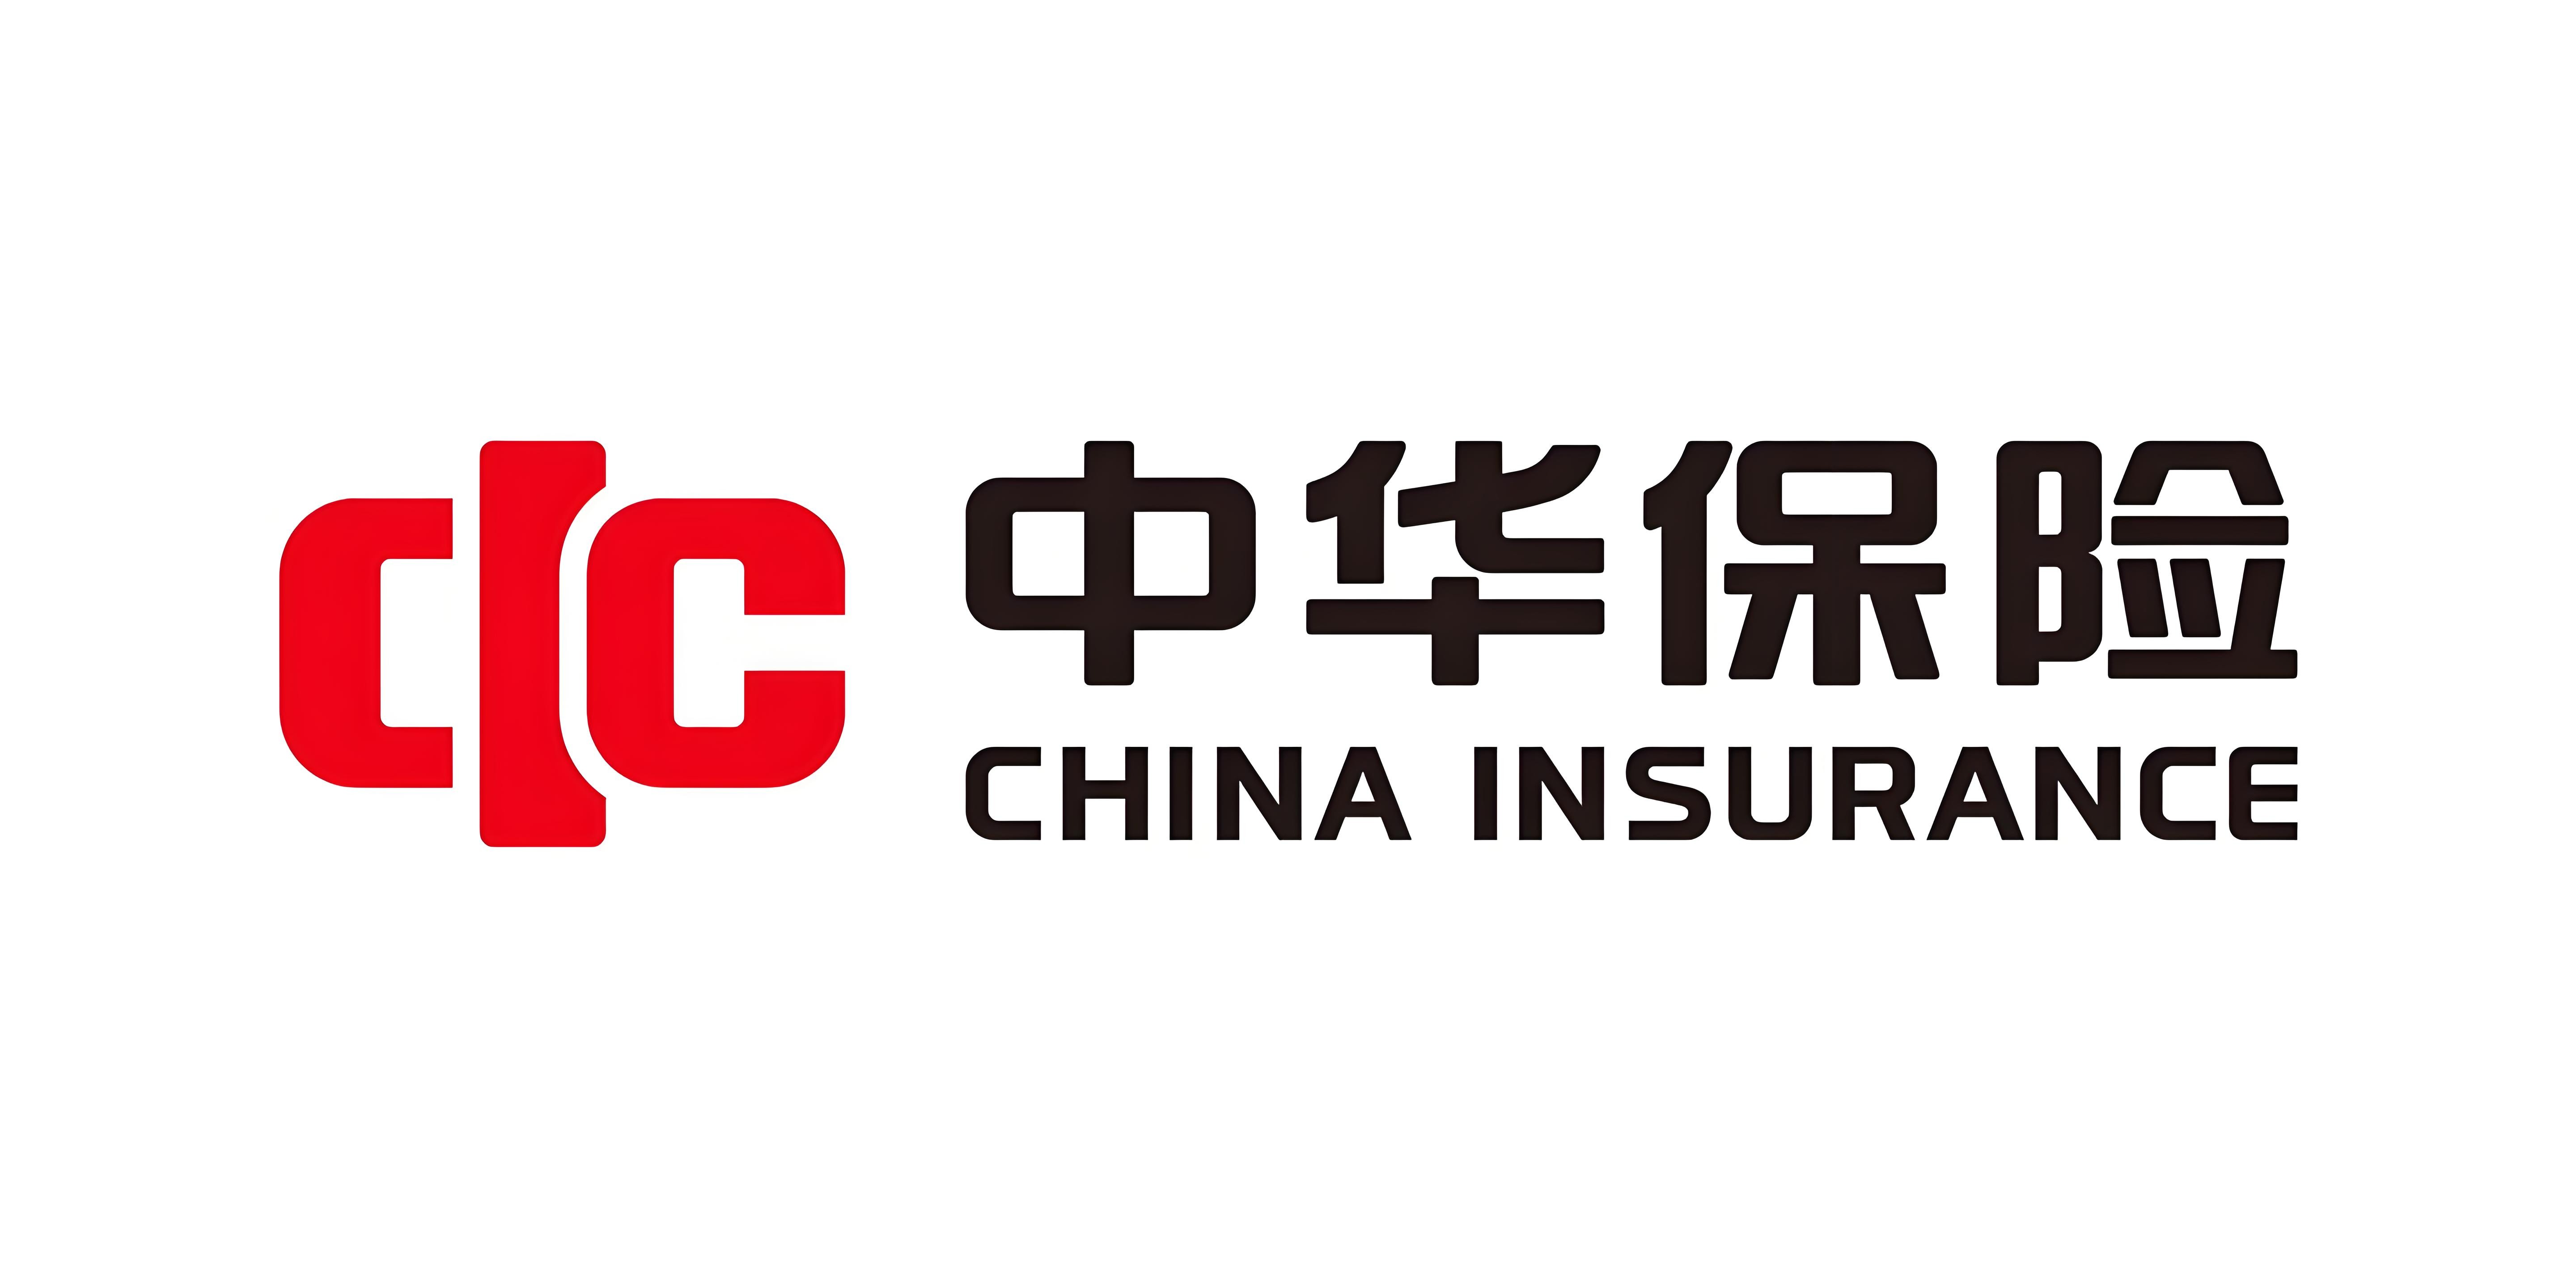 中华保险坚持初心,为广大人民群众提供高质量的保险保障